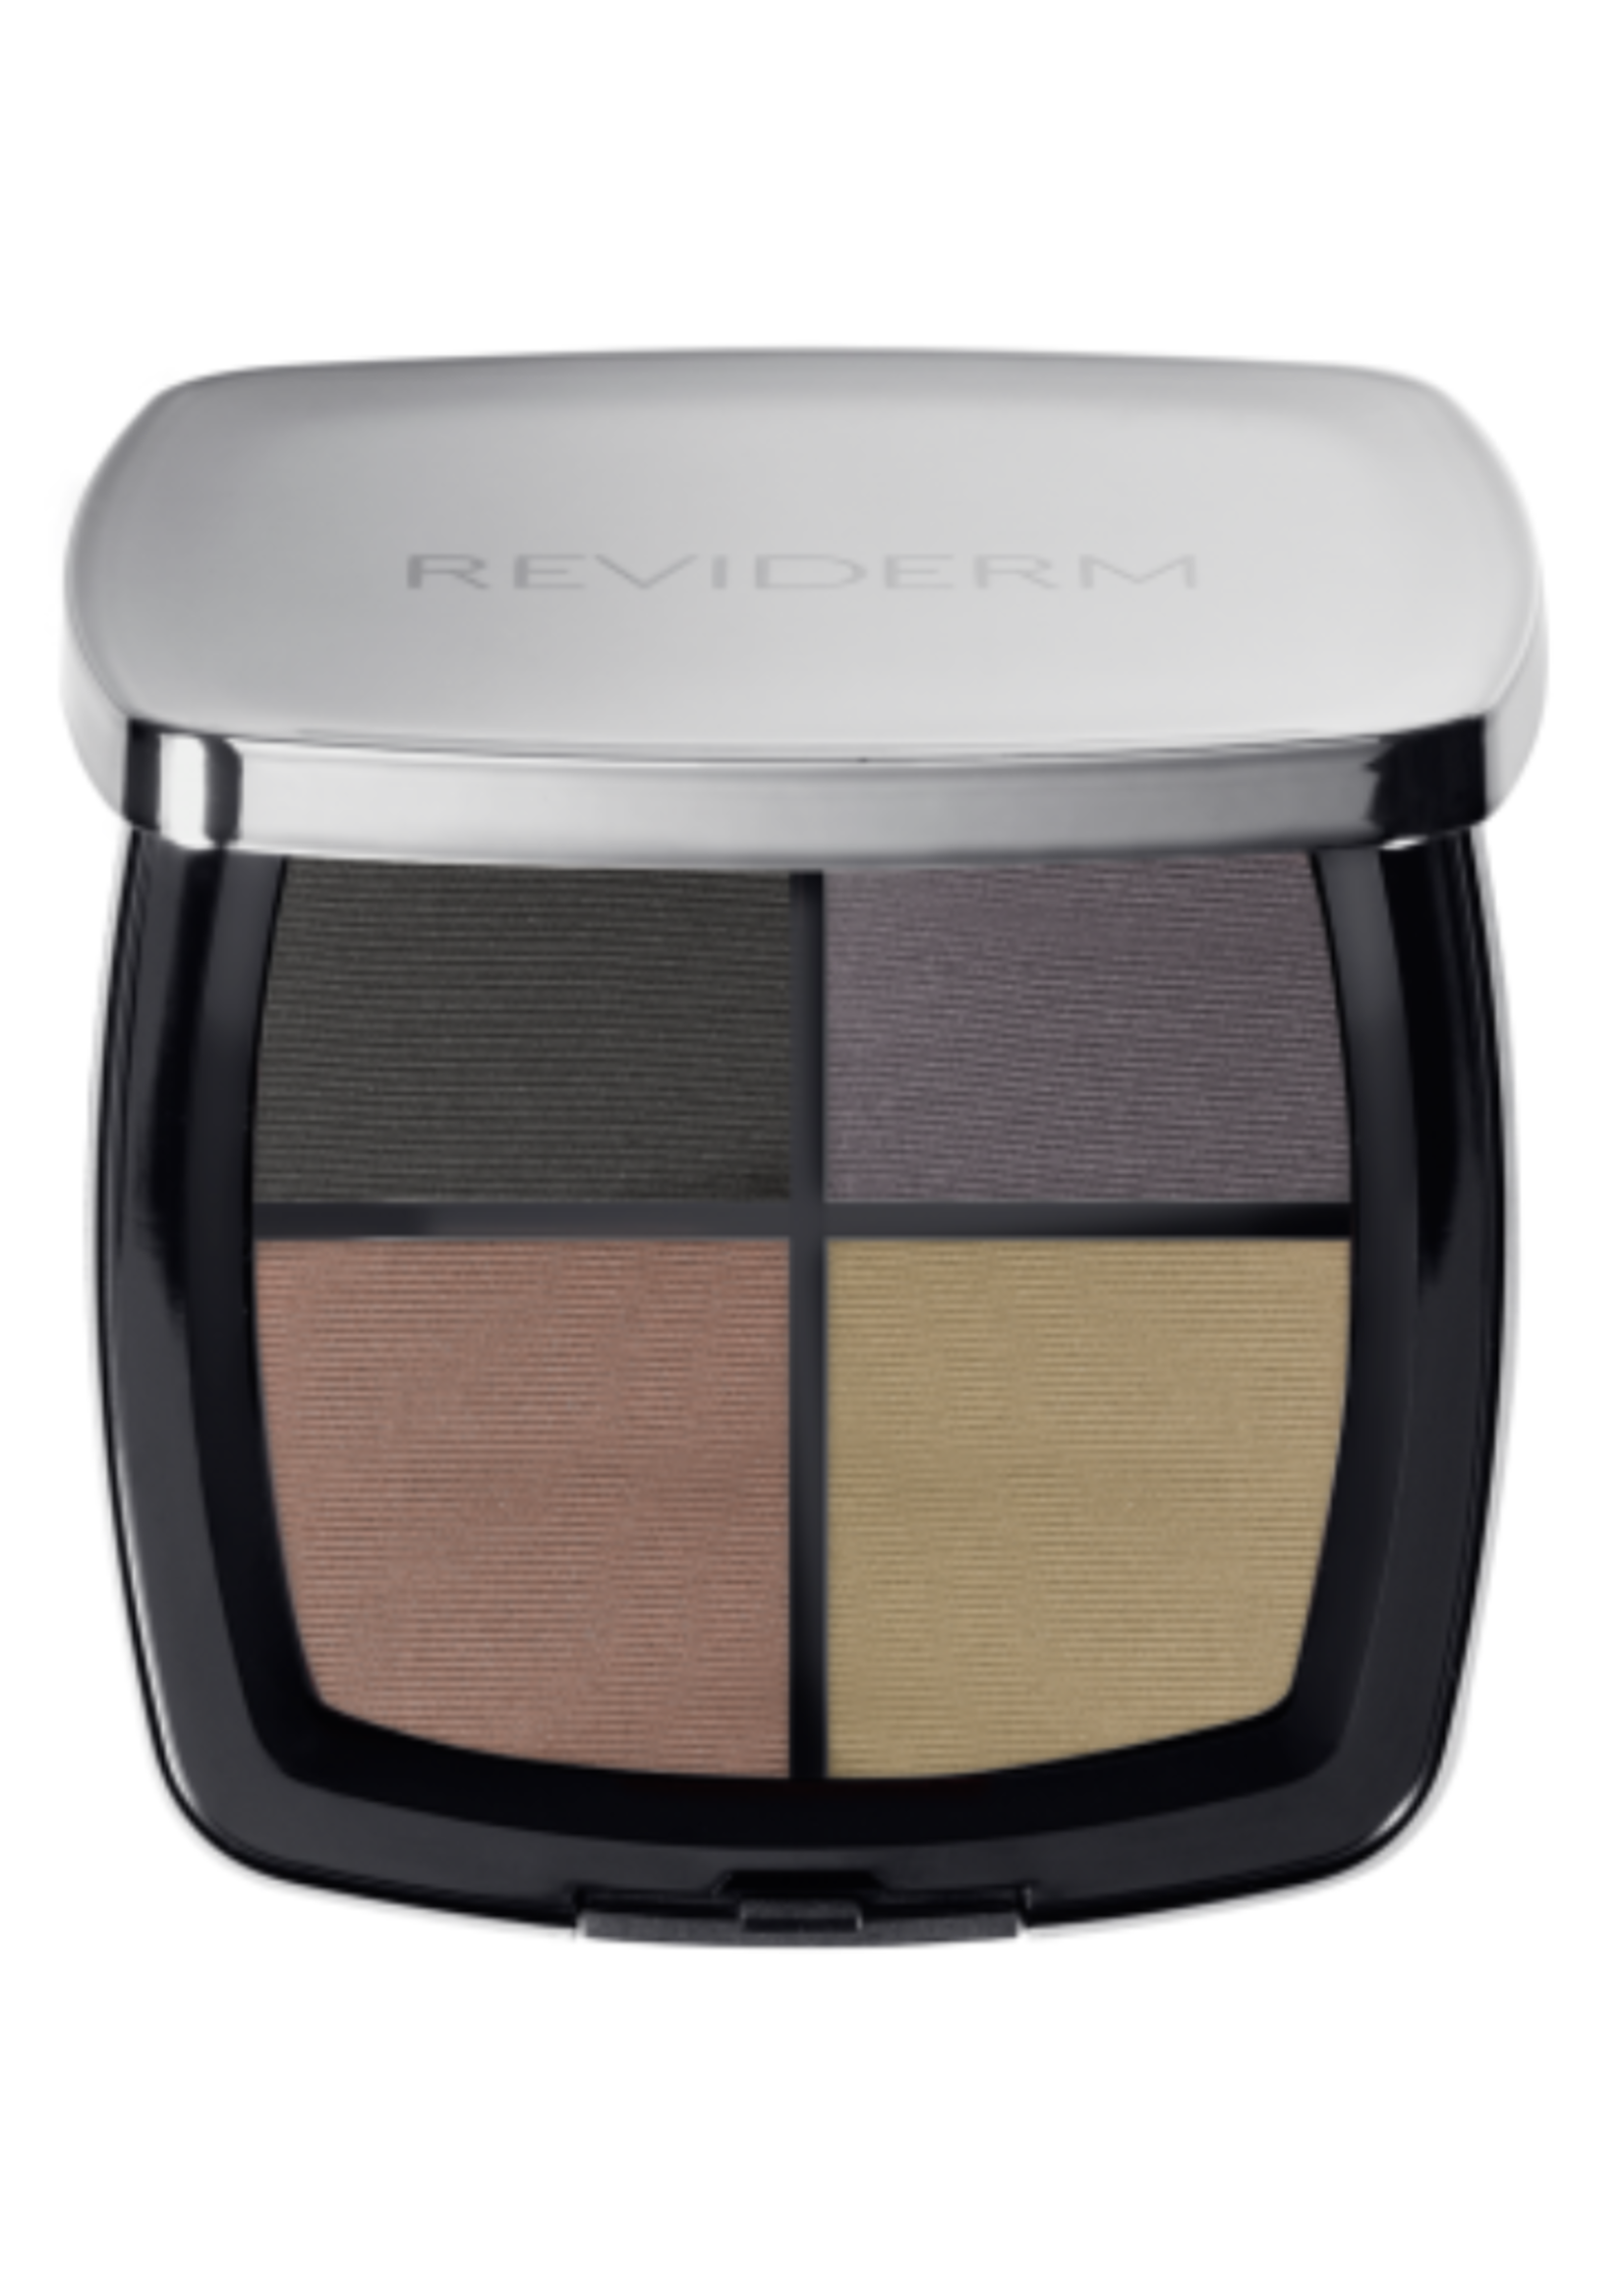 Reviderm Mineral Quattro Eyeshadow | Lidschatten 2C Mystic Glamour 8g